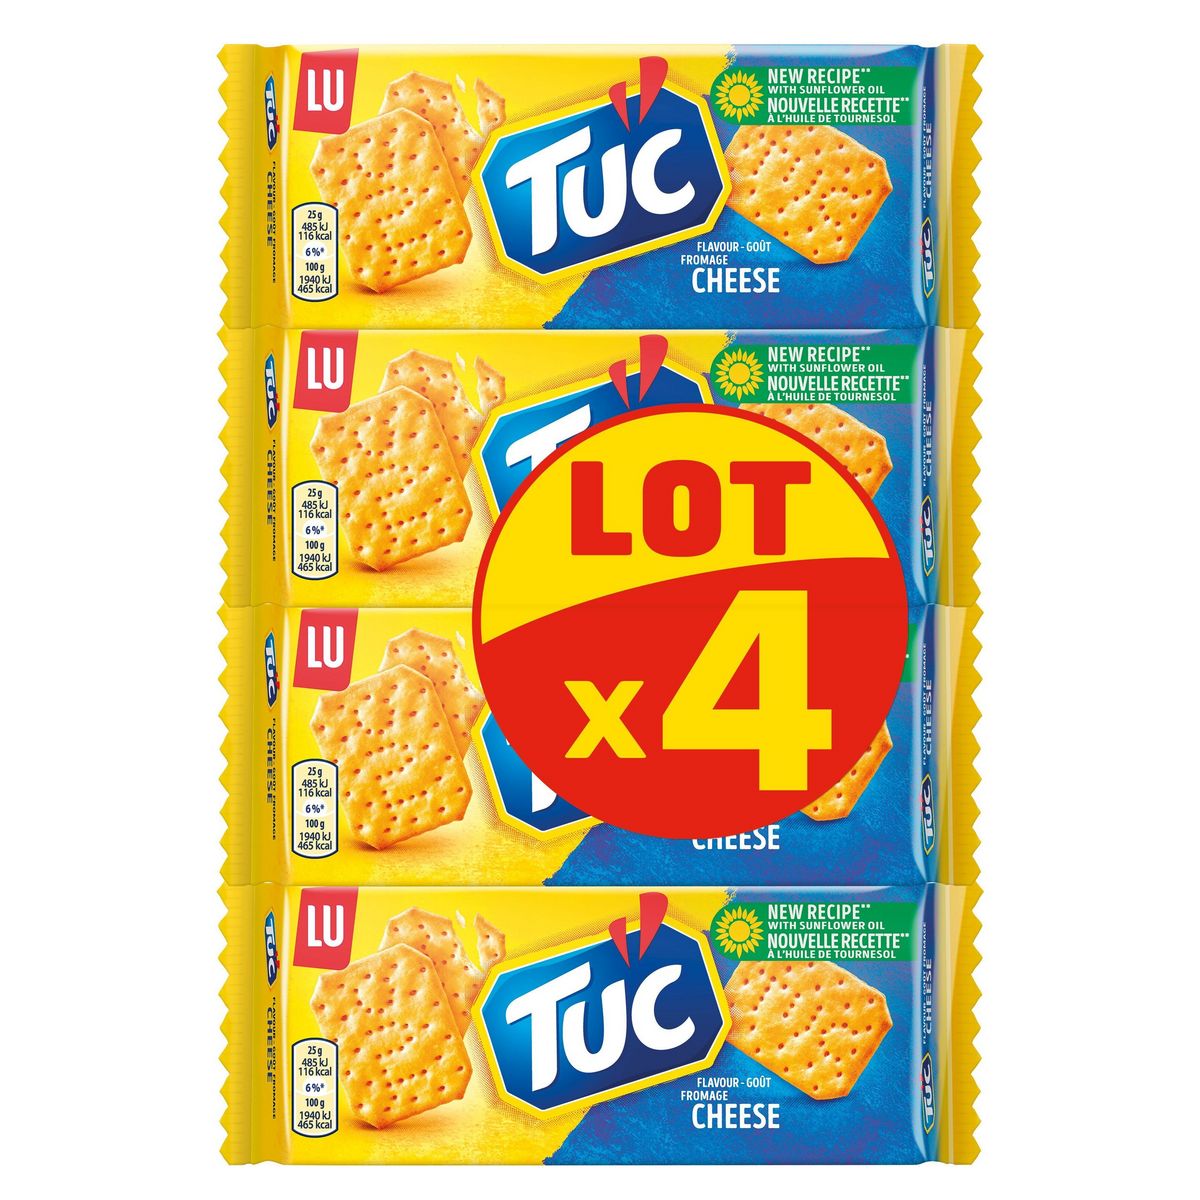 TUC Crackers salés goût fromage lot de 4 4x100g